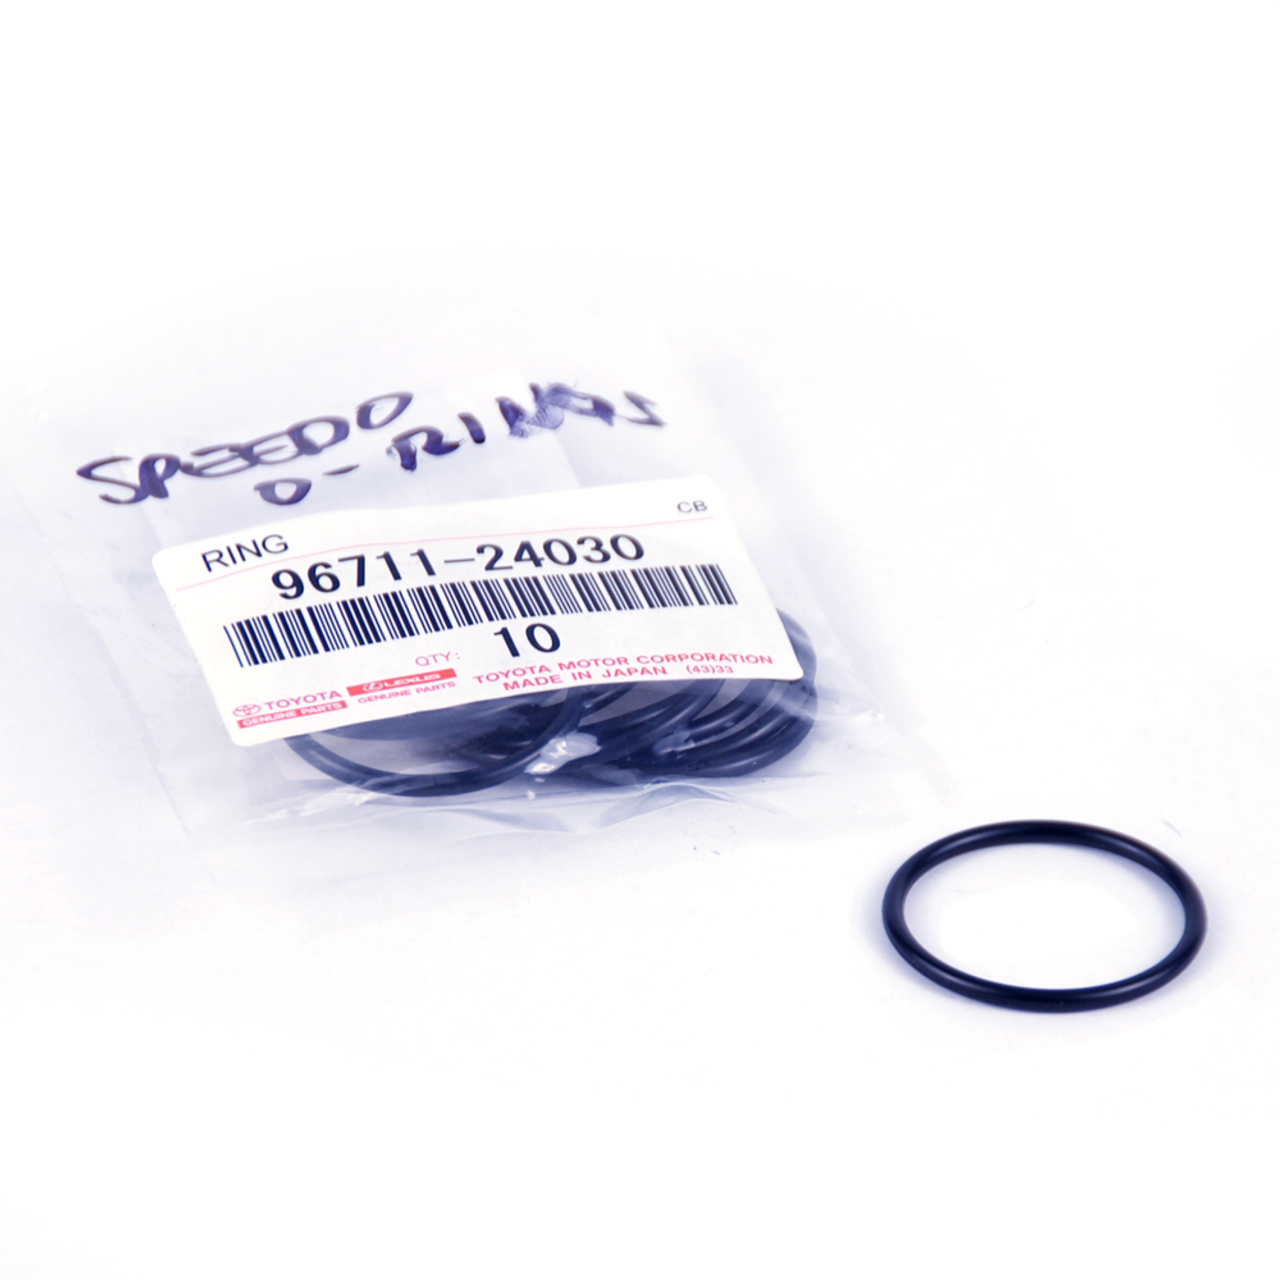 Speedometer Sensor O-Ring, 96711-24030 (SSO-1)